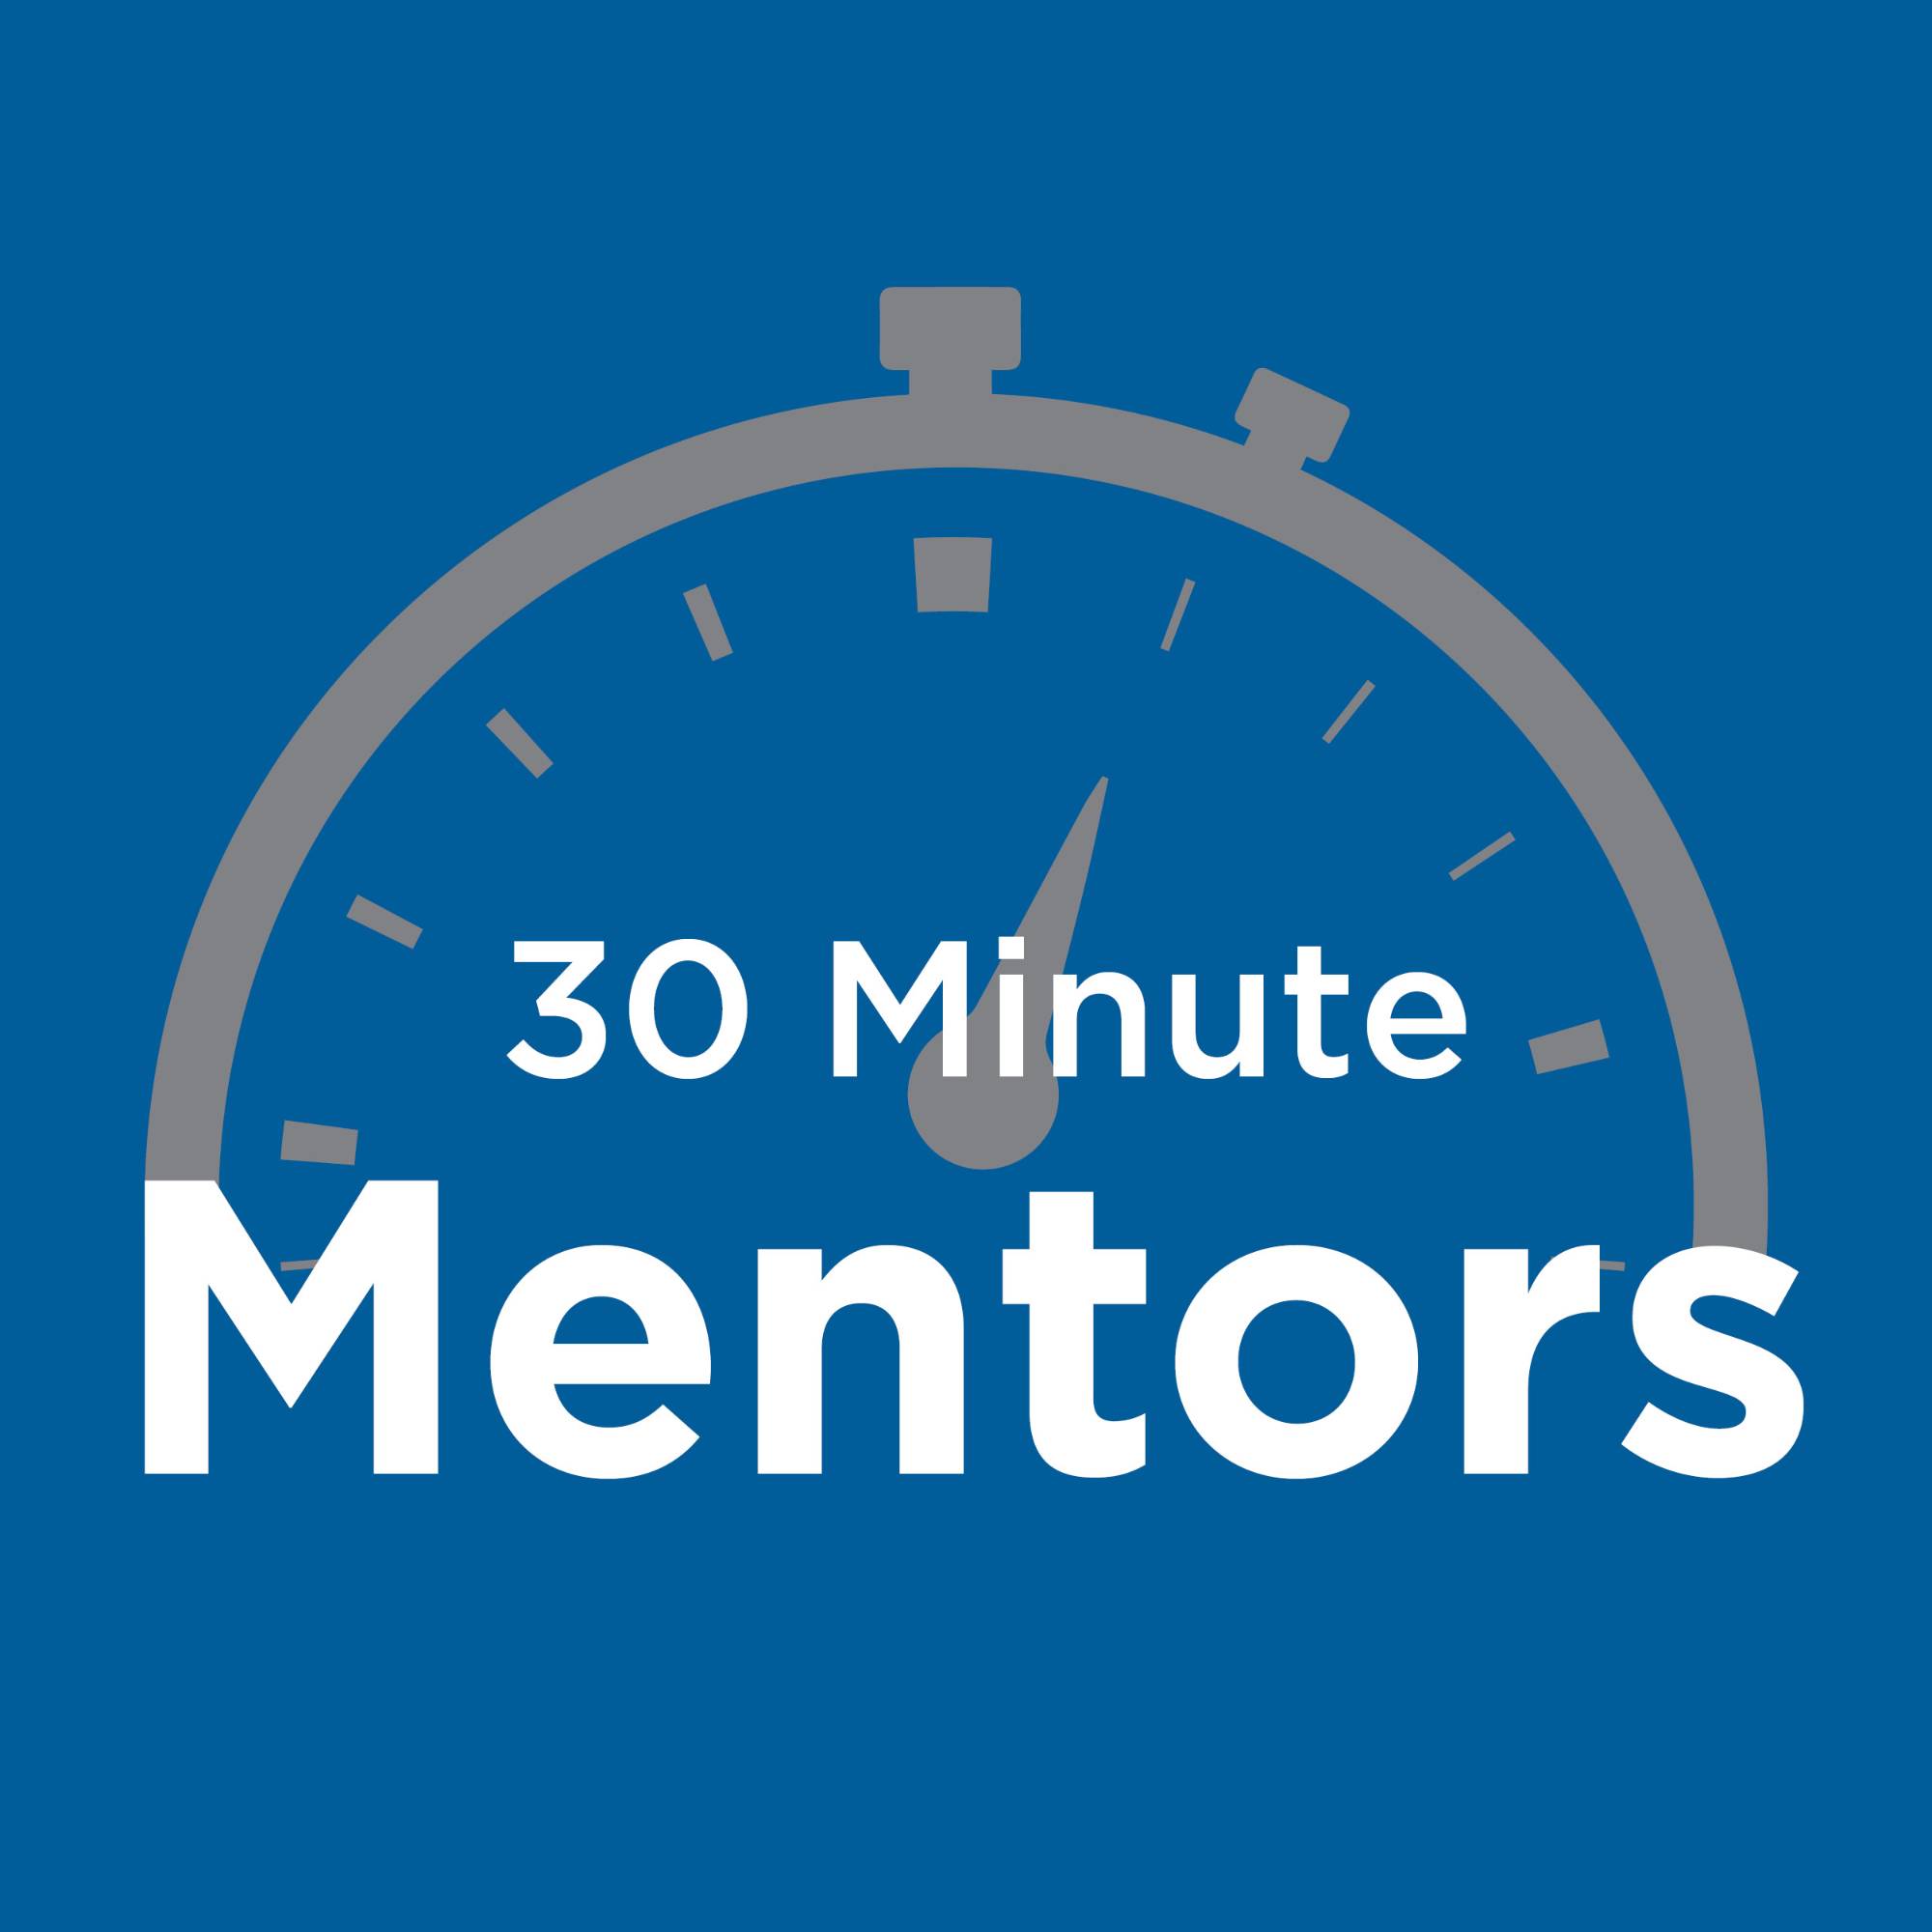 30 Minute Mentors